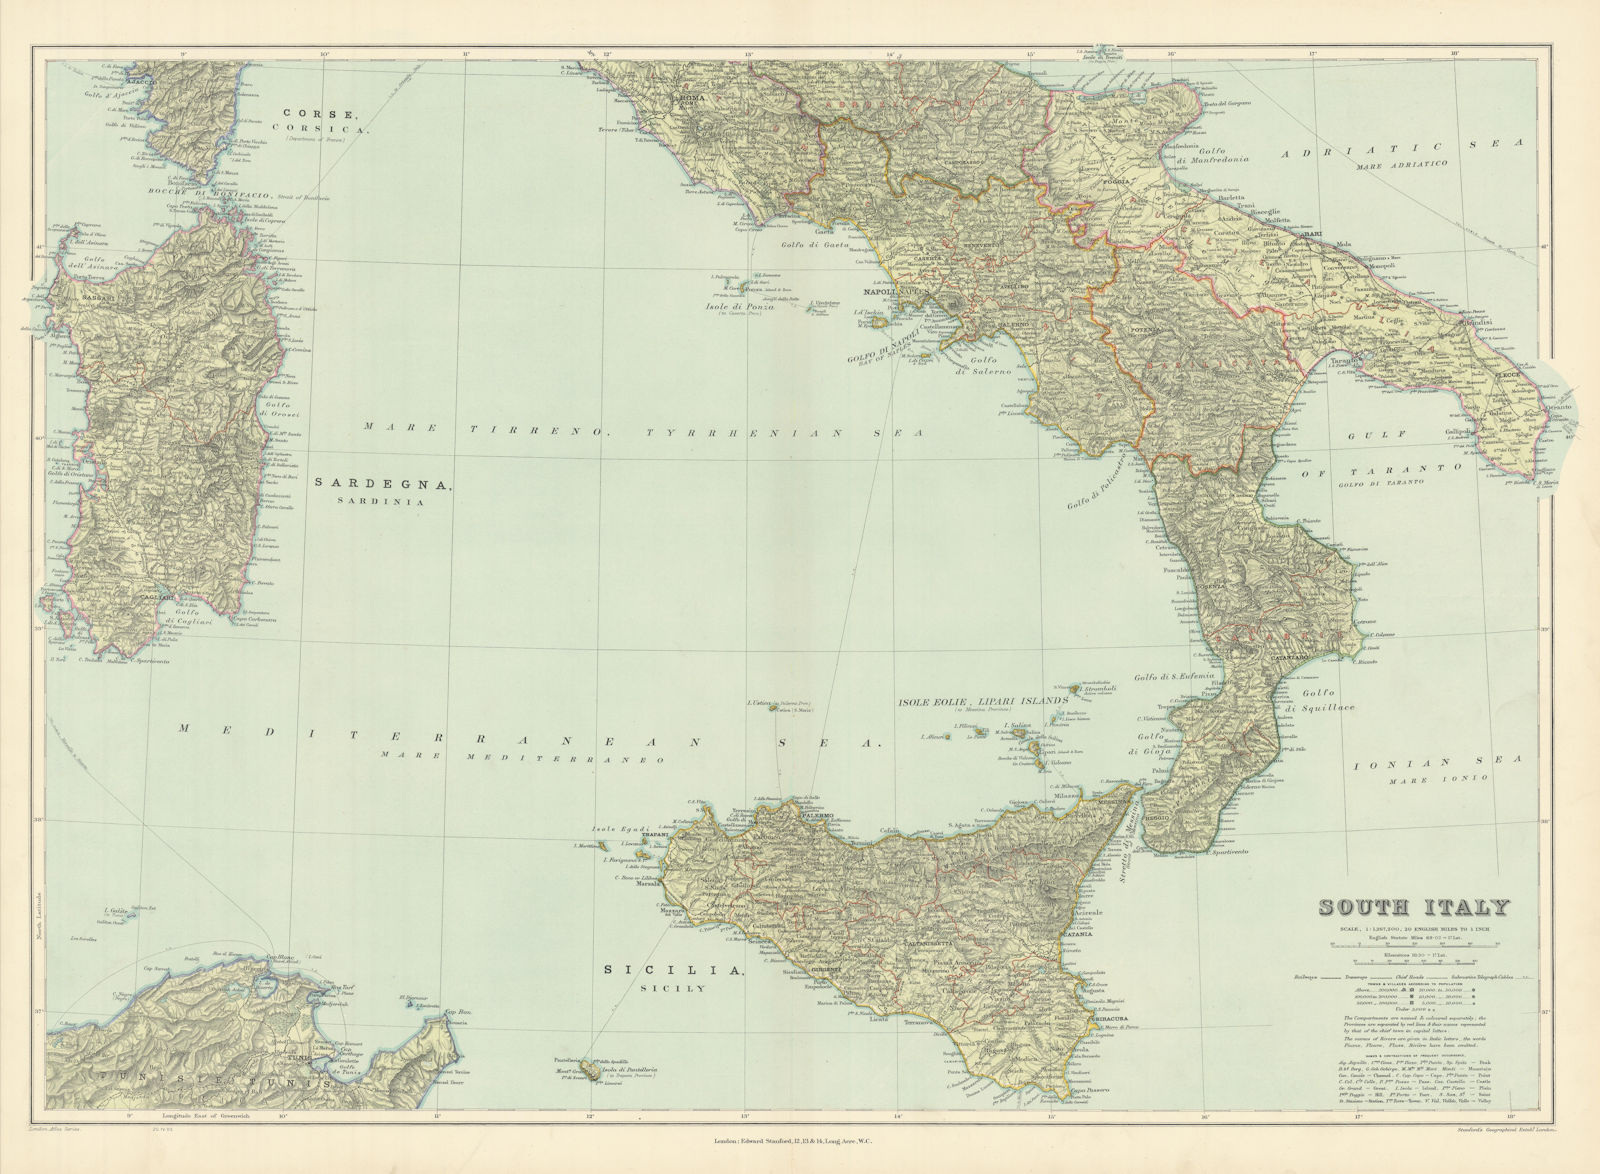 South Italy. Sicily Calabria Puglia Abruzzo Lazio Campania. STANFORD 1904 map